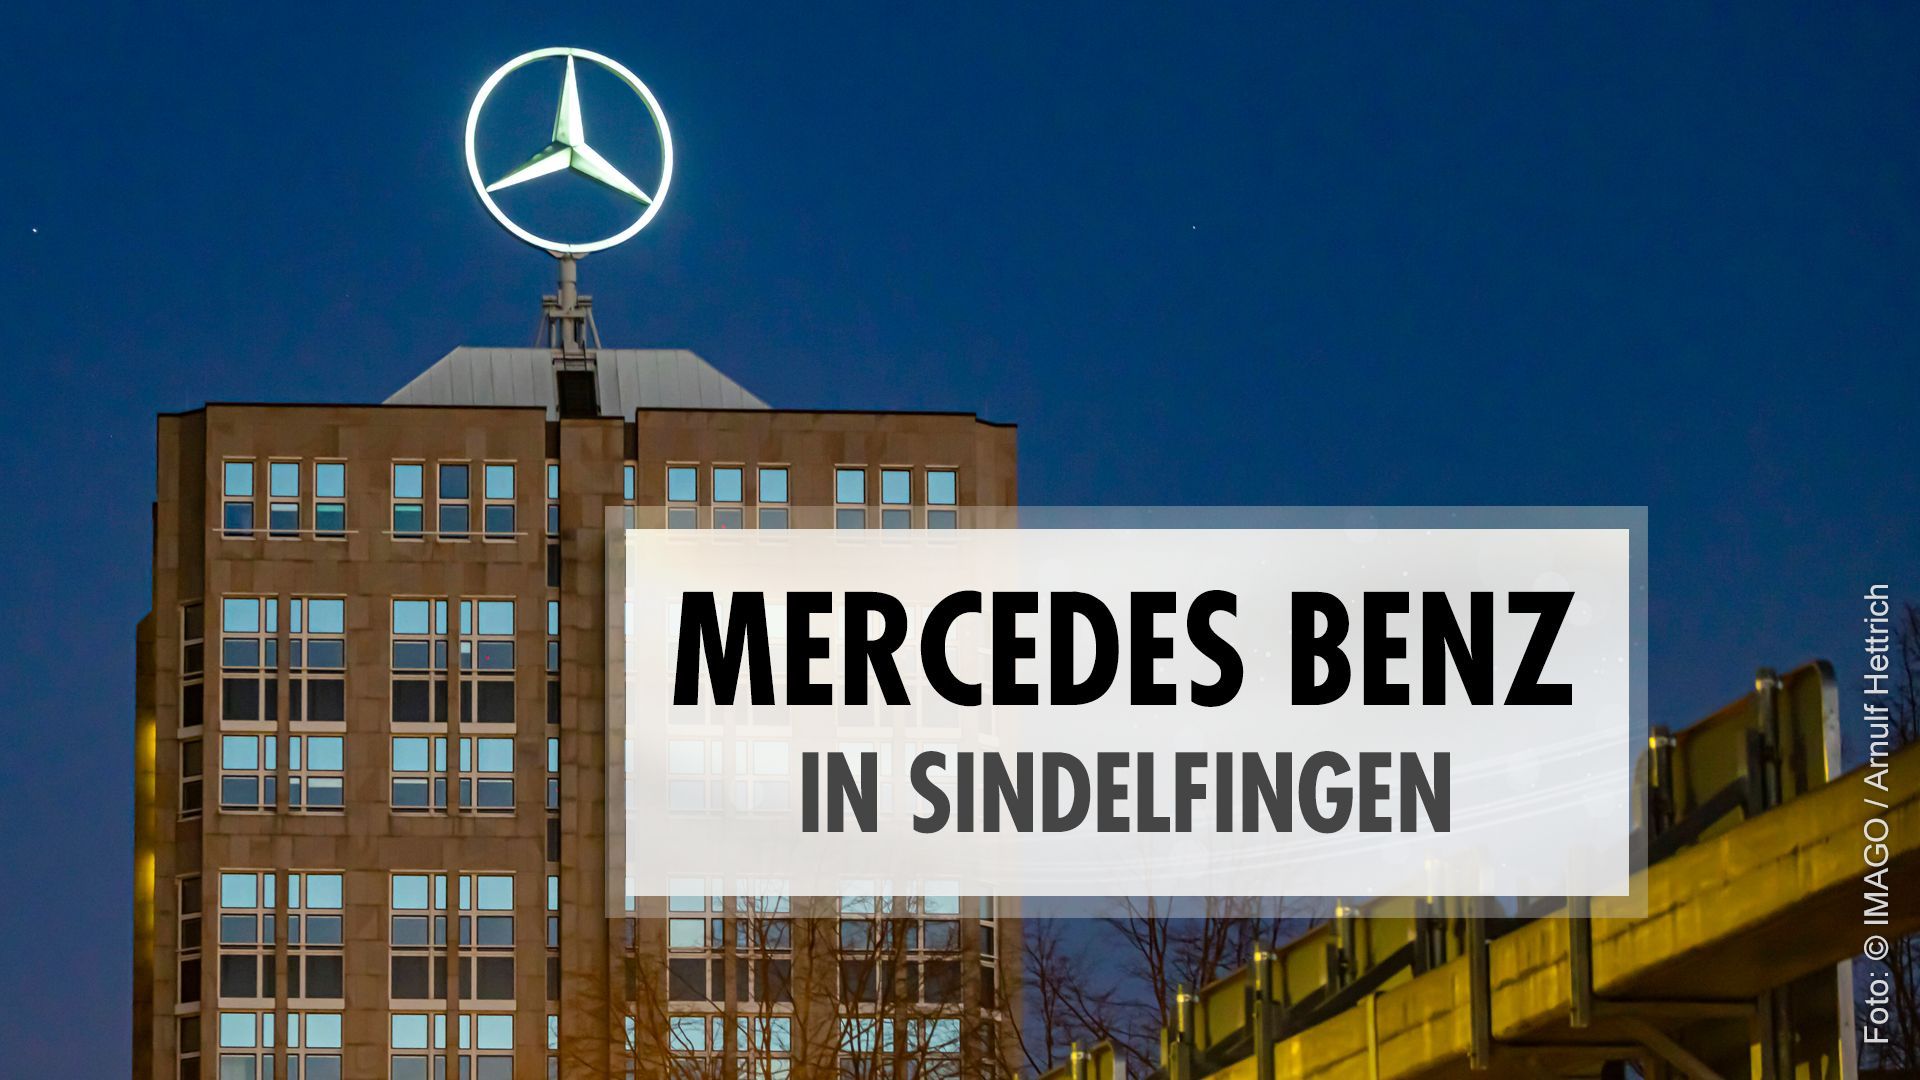 Mercedes Benz in Sindelfingen: Die große Fabrikanlage in Baden-Württemberg